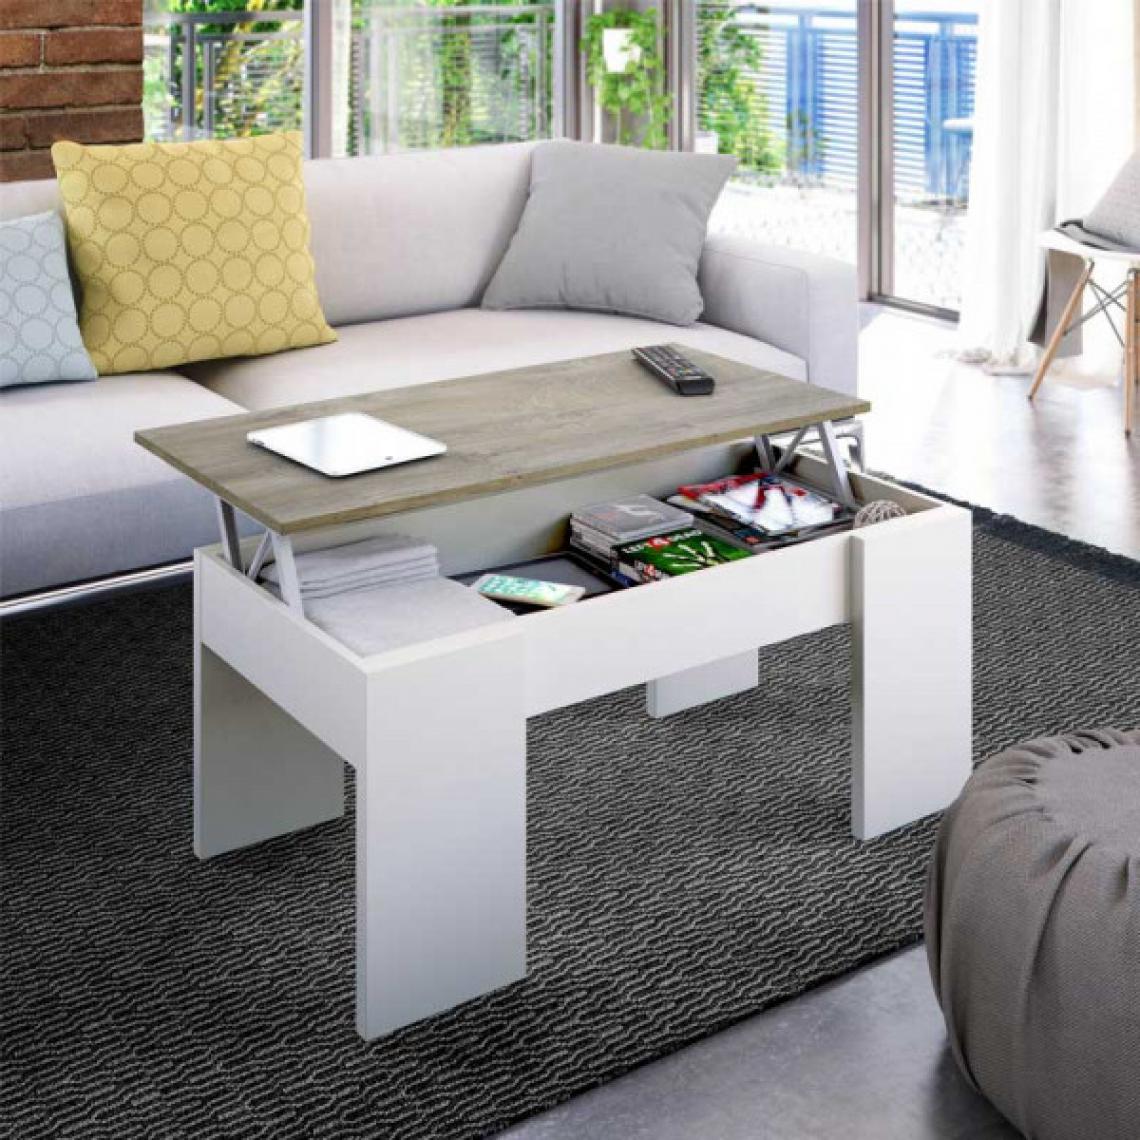 Dansmamaison - Table basse relevable Blanc/Chêne - ARTICA - L 100 x l 50 x H 45 cm - Tables basses